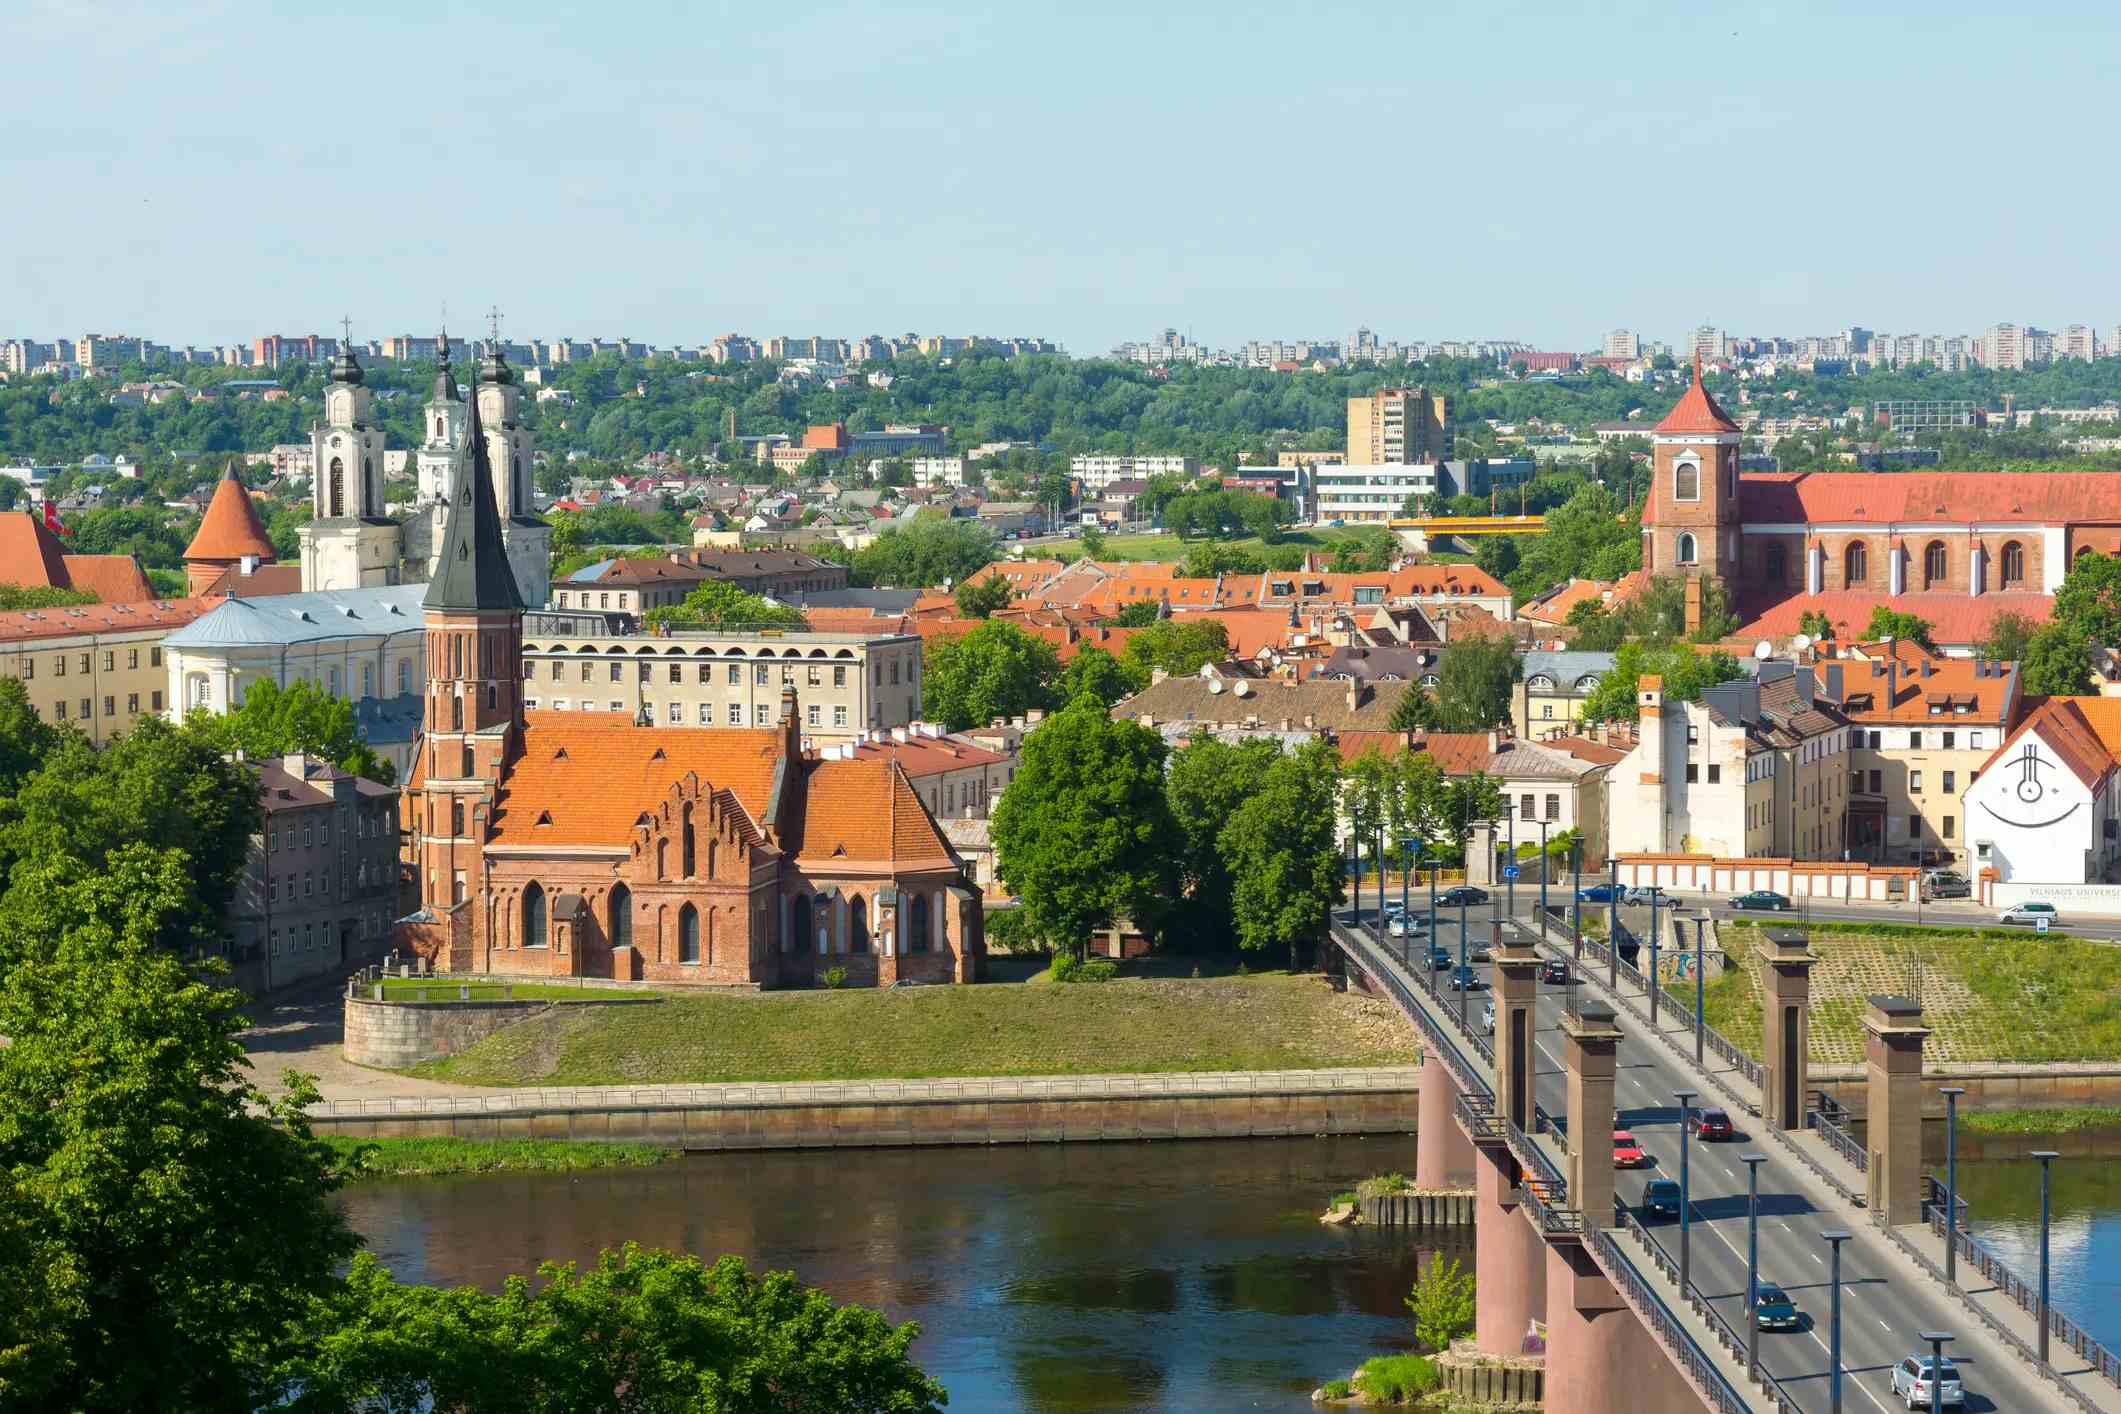 Altstadt Kaunas image